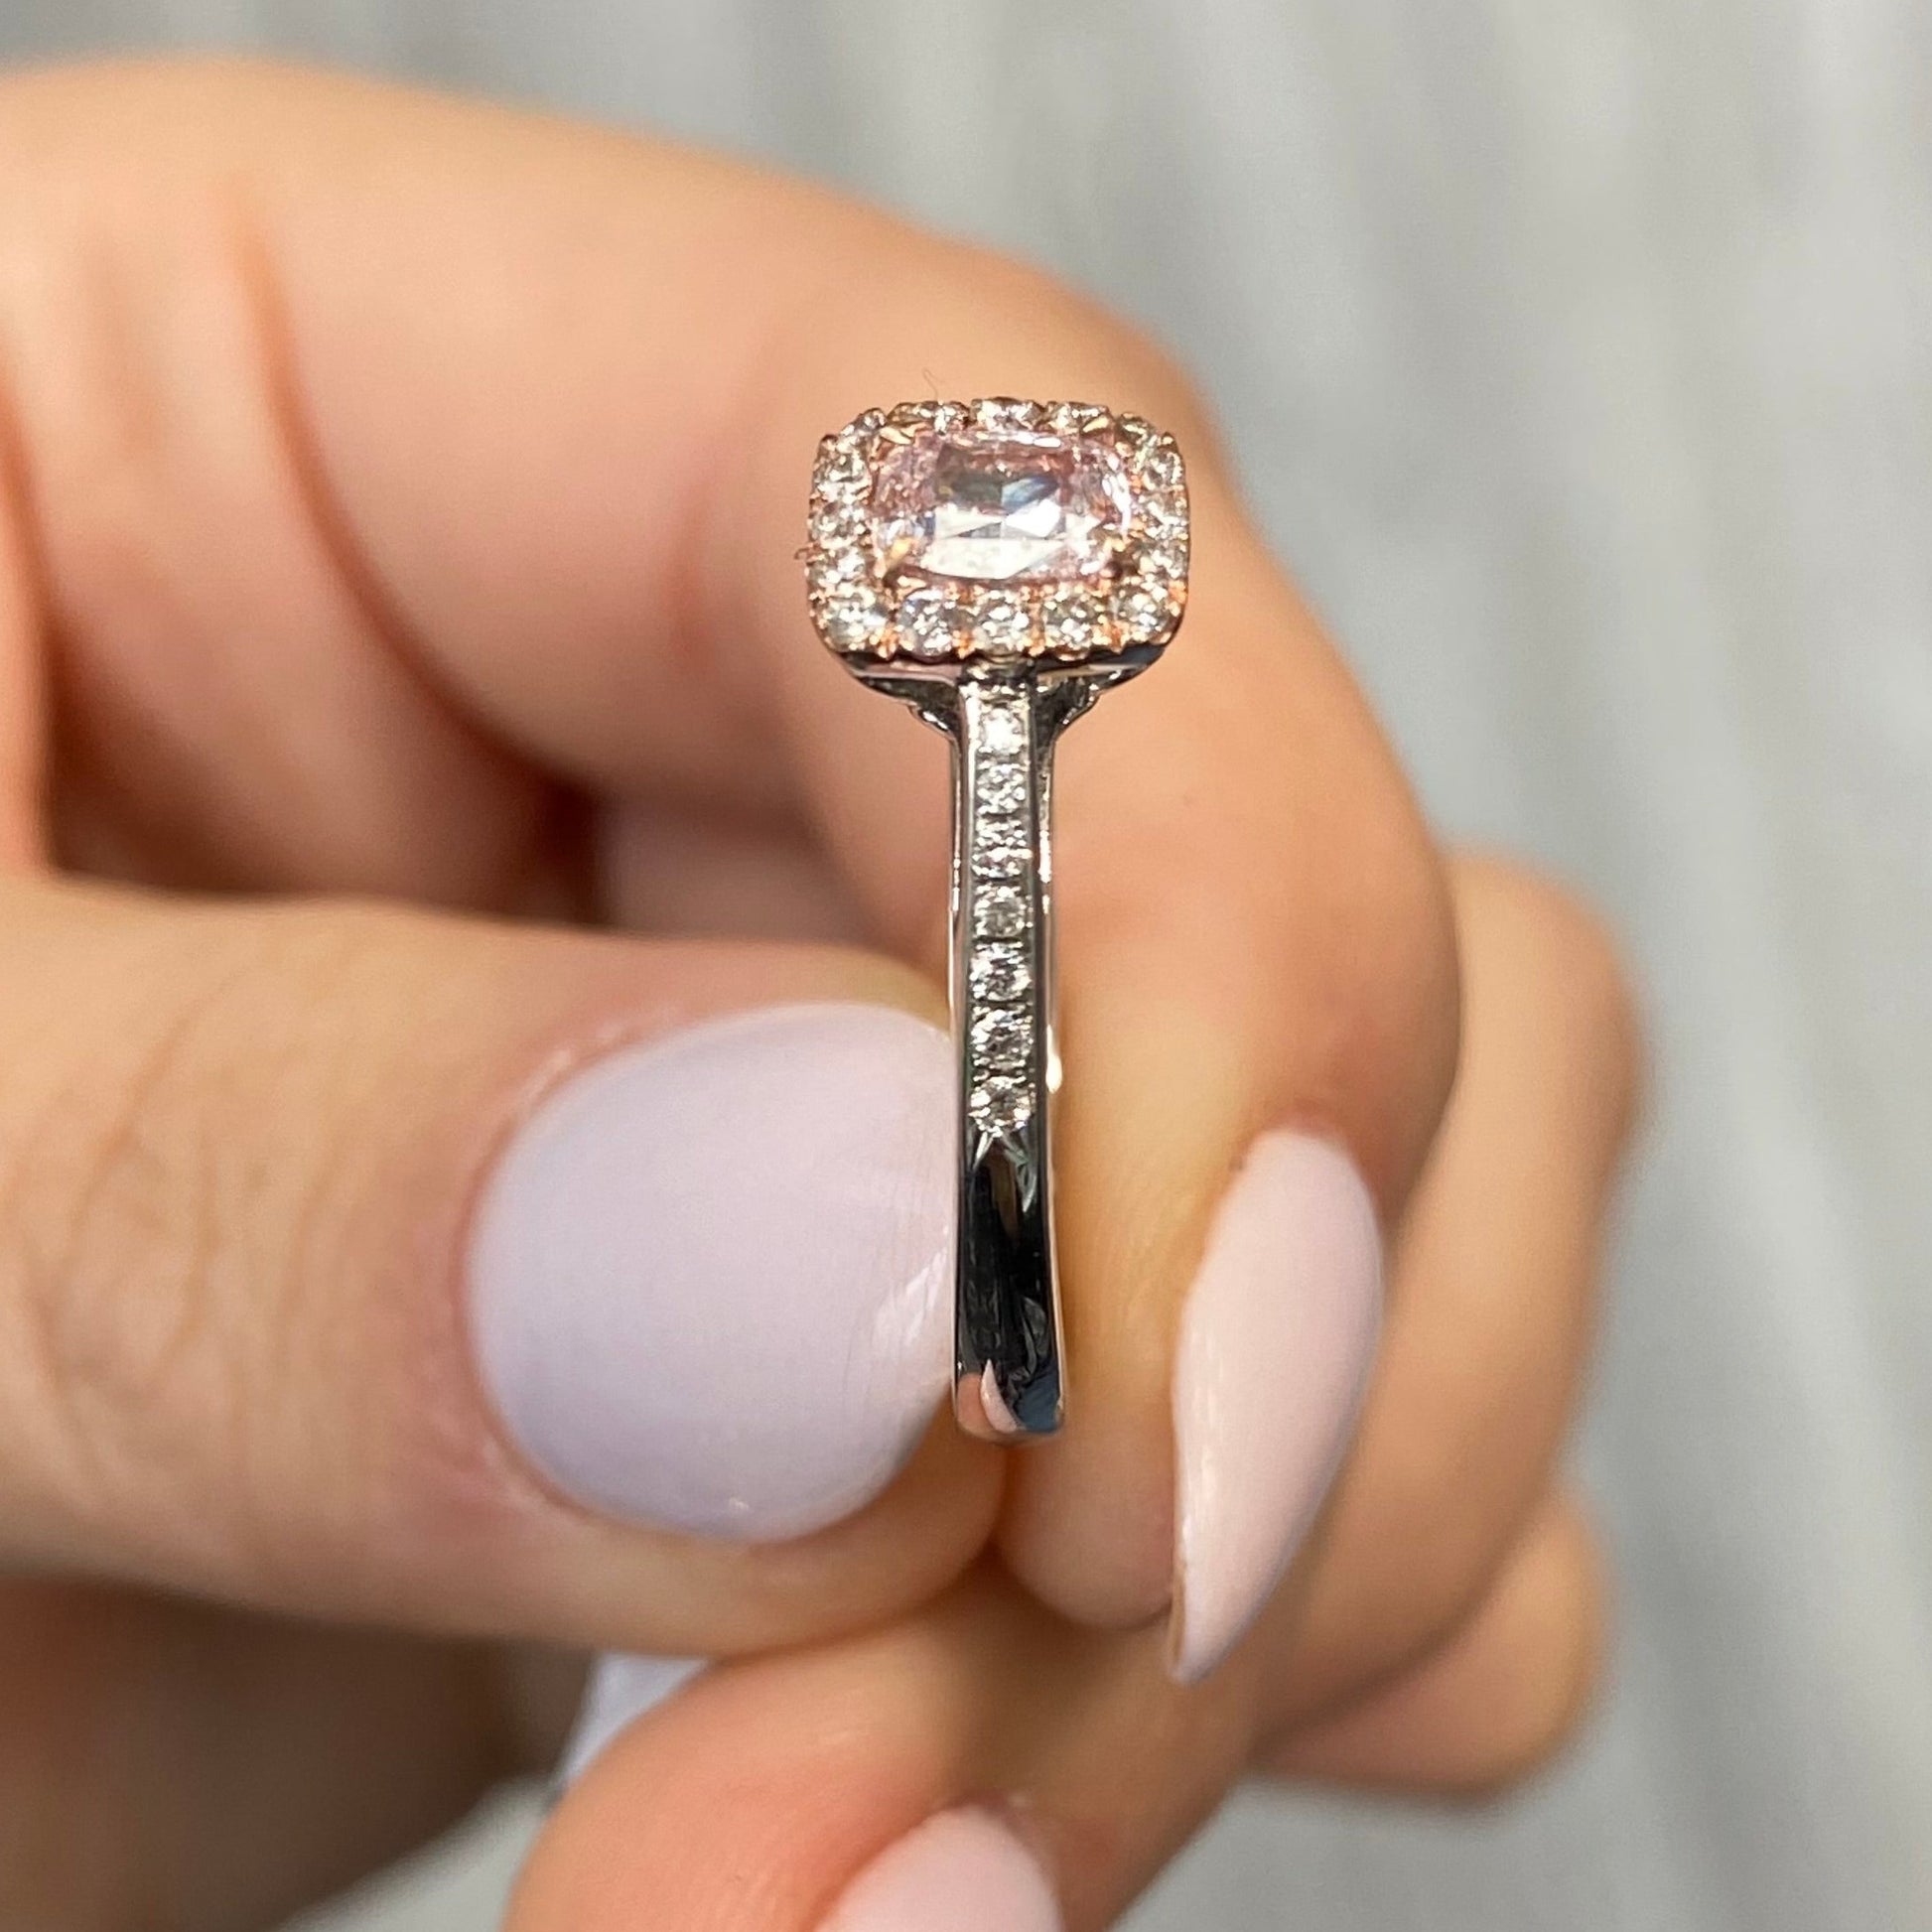 Pink diamond ring. pink diamond engagement ring. light pink diamonds. light pink cushions. diamond ring.